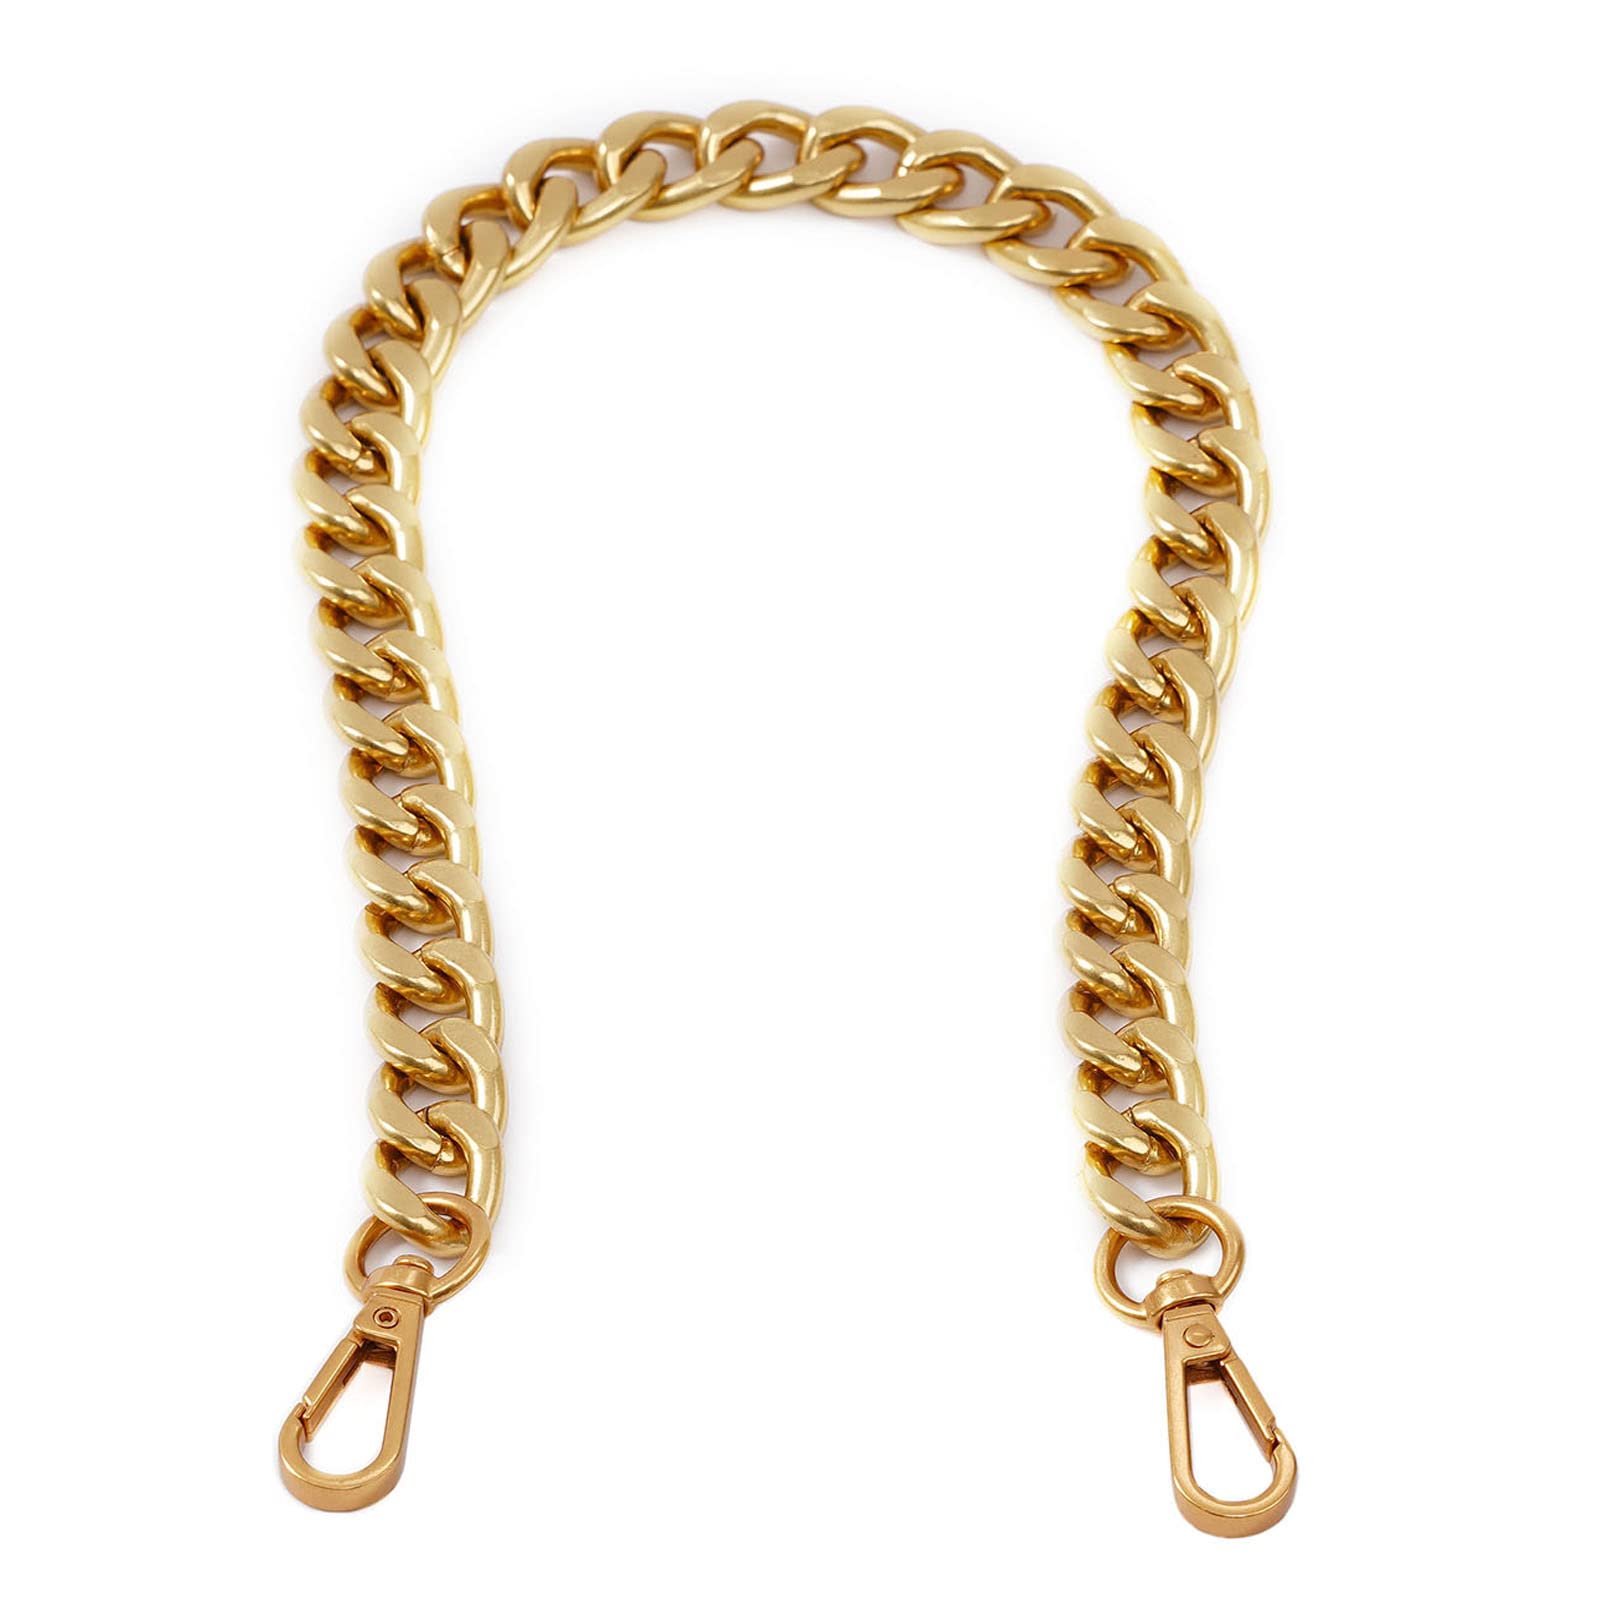 TINBERON Bag Straps Saddle Bag Remould Bag Chain Strap Vintage Gold Chain  Shoulder Strap Luxury Metal